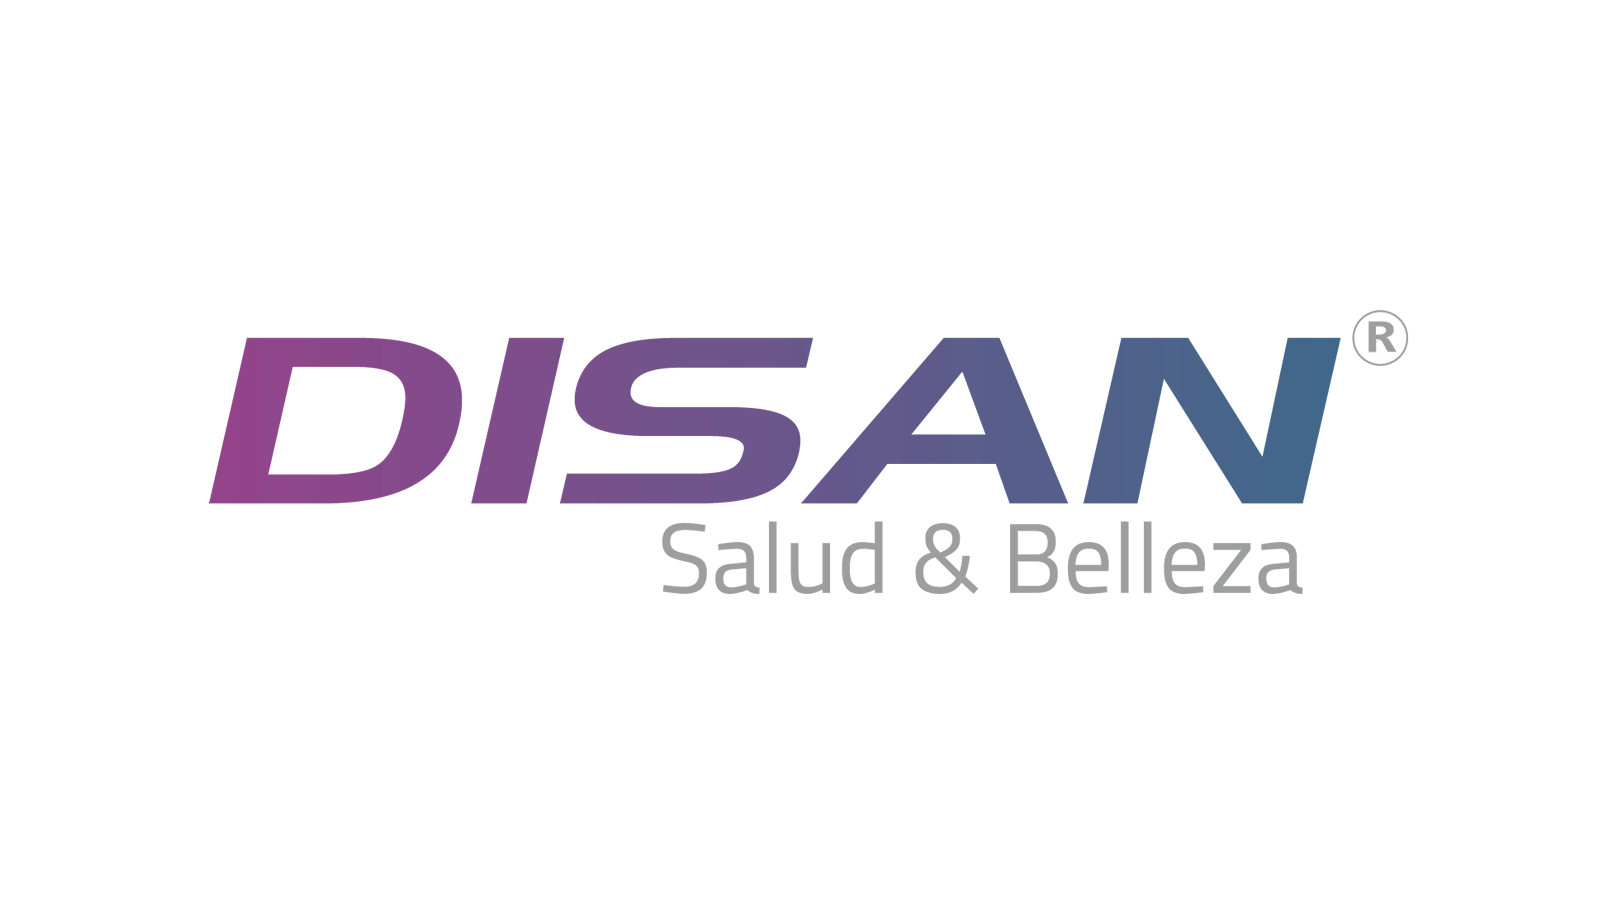 Logo Disan